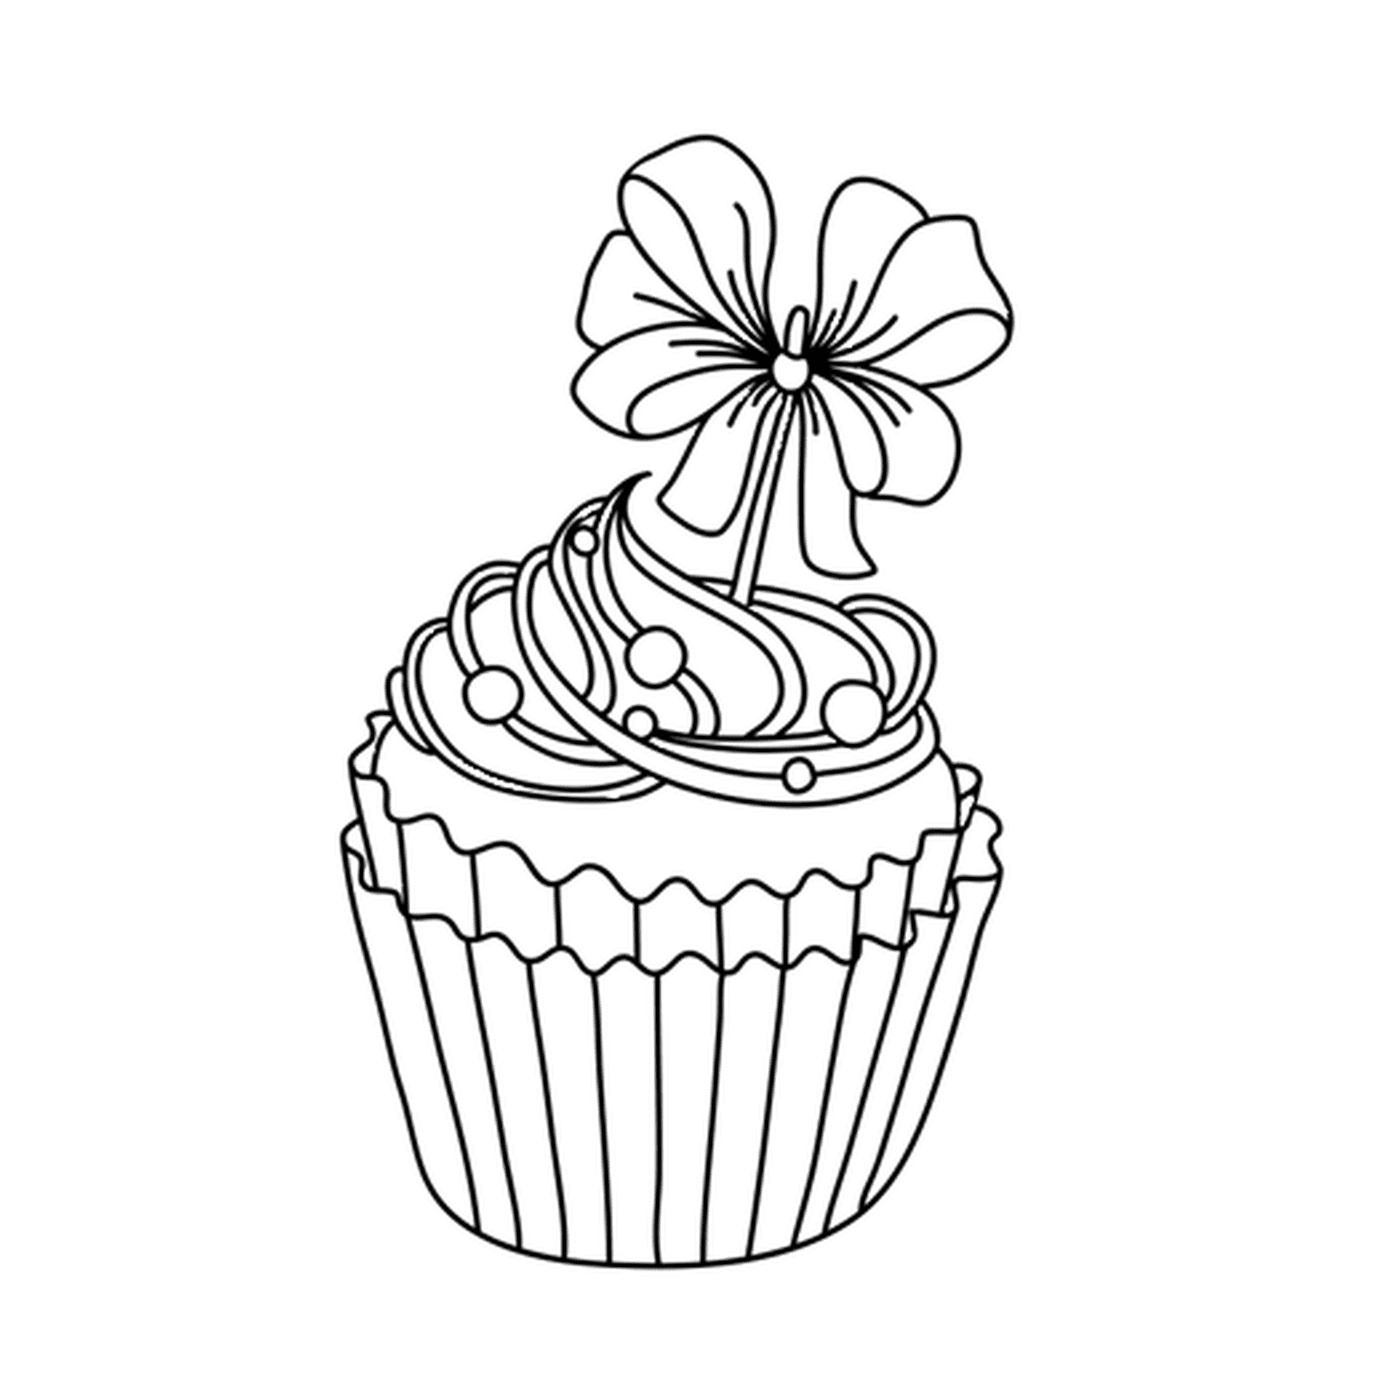   Un cupcake festif à dévorer, avec une fleur 